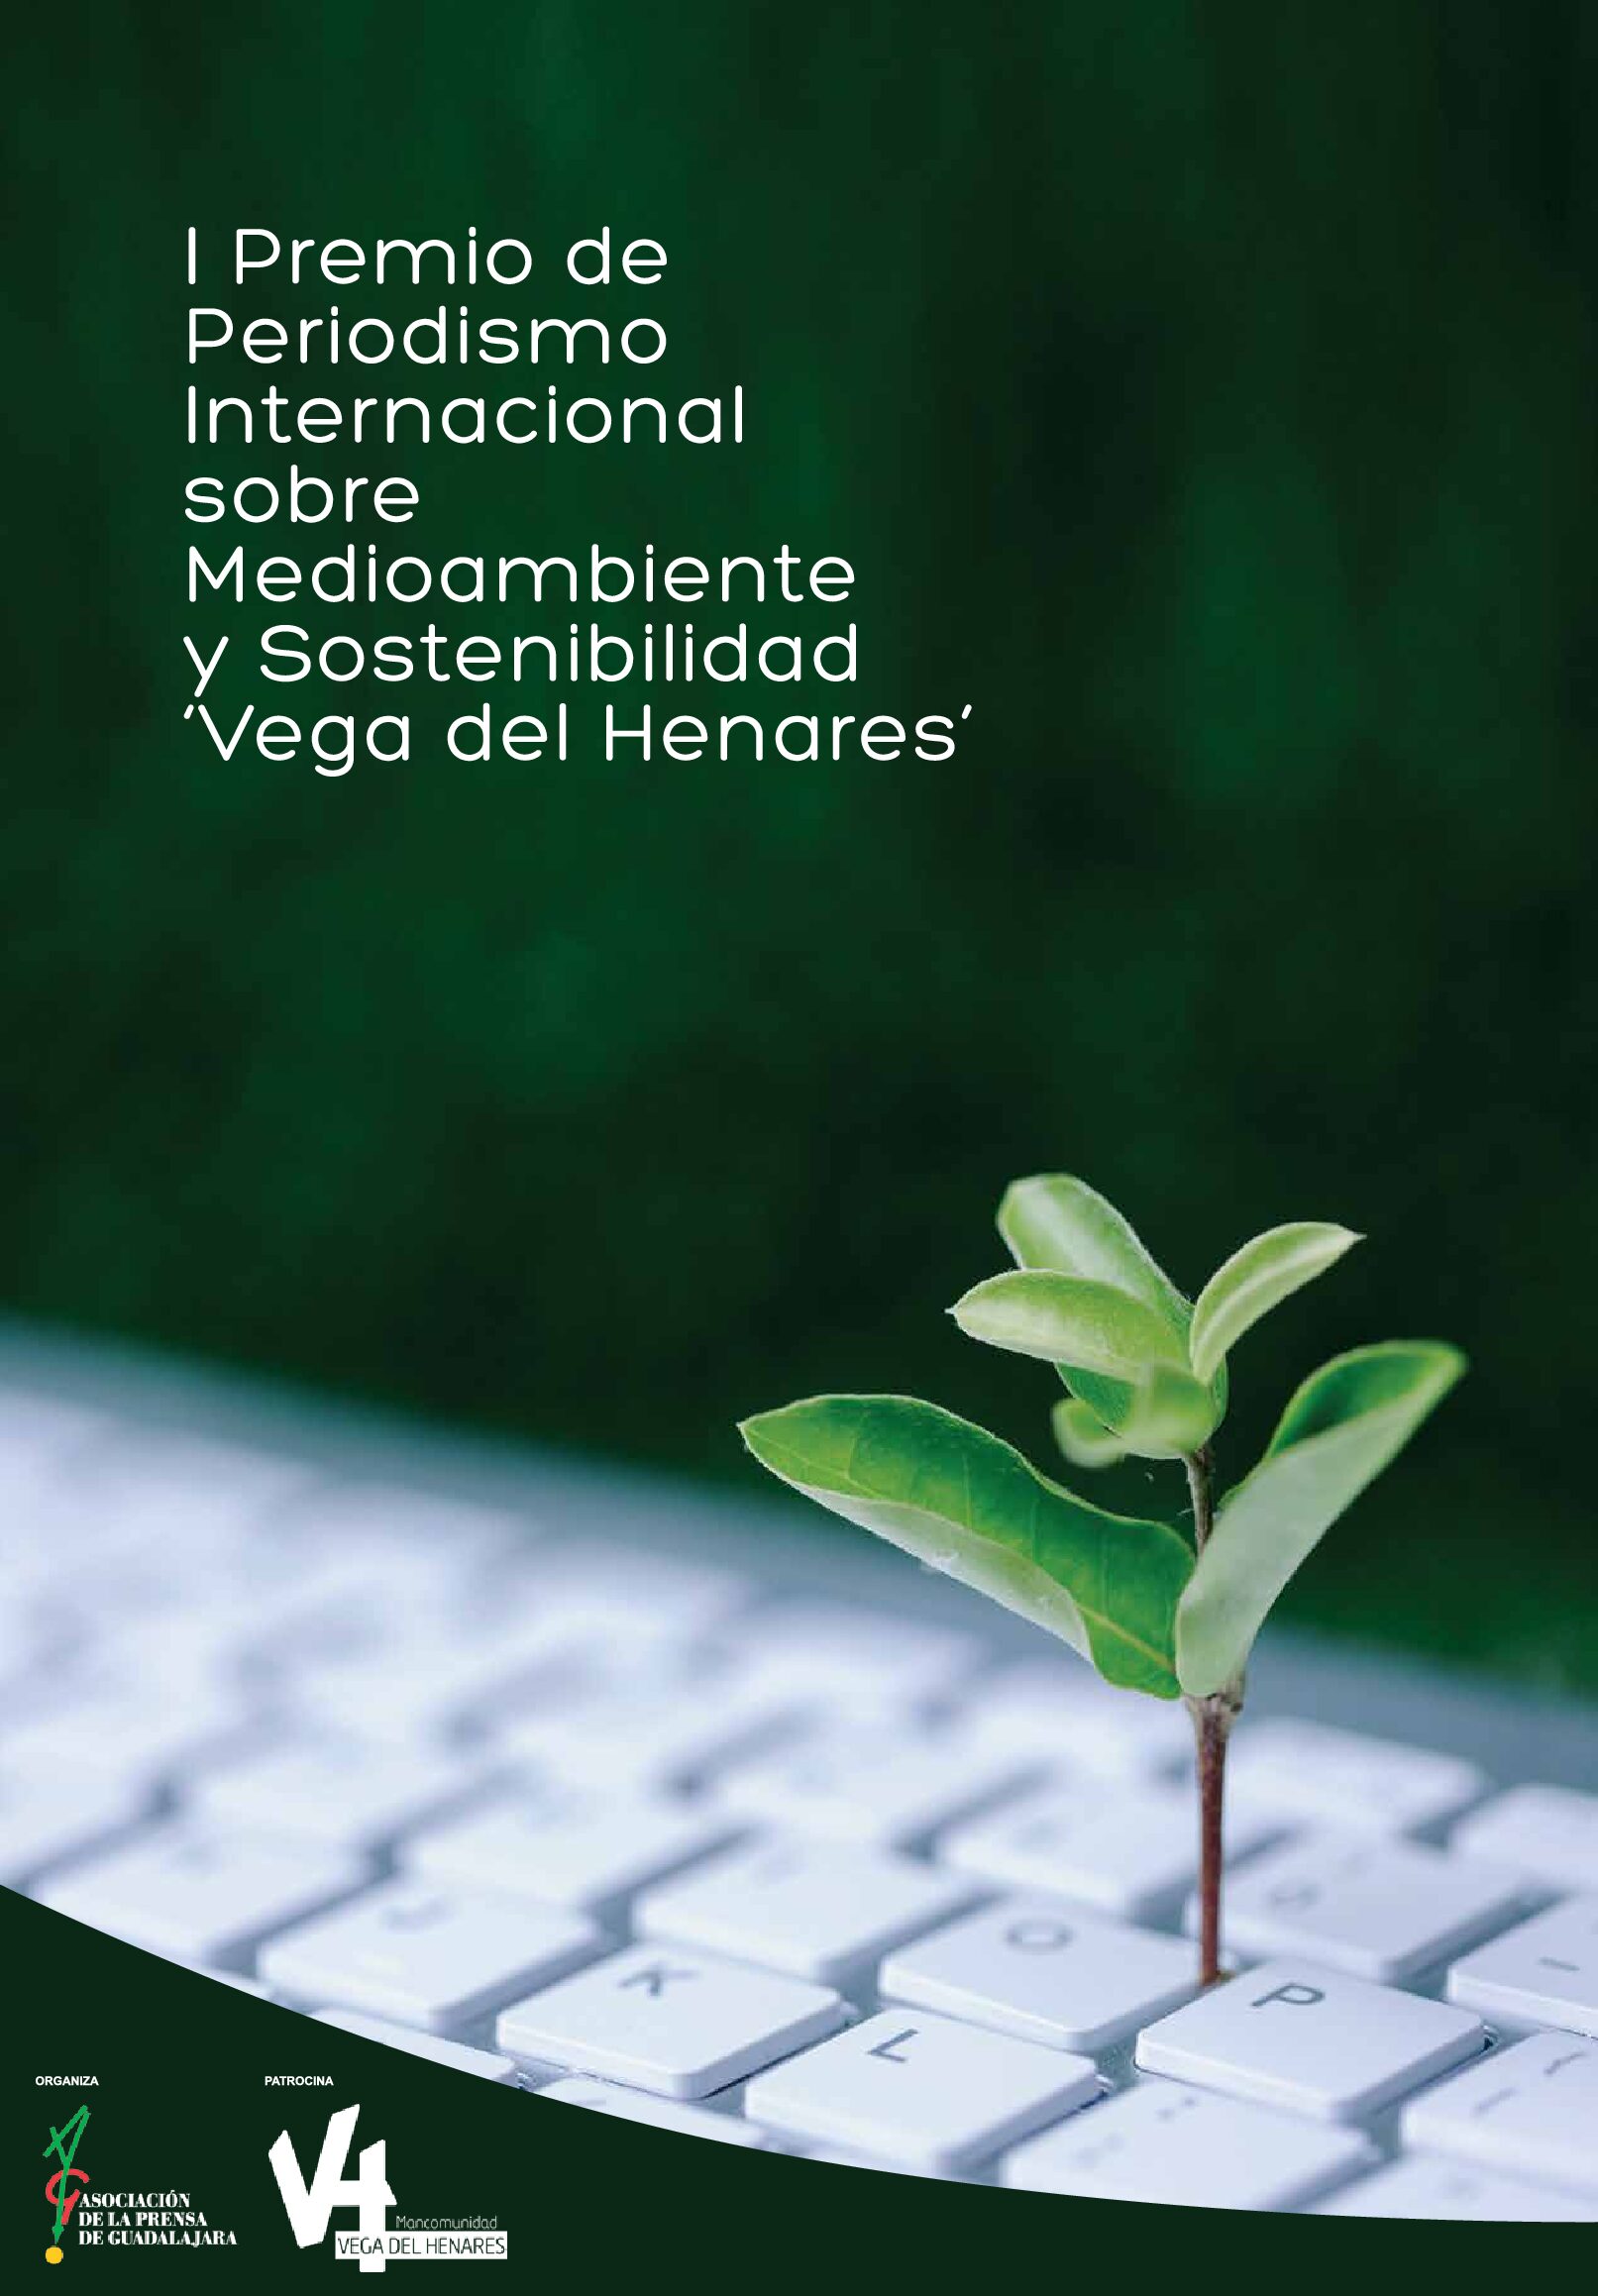 La Asociación de la Prensa de Guadalajara convoca el I Premio de Periodismo Internacional sobre Medioambiente y Sostenibilidad ‘Vega del Henares’